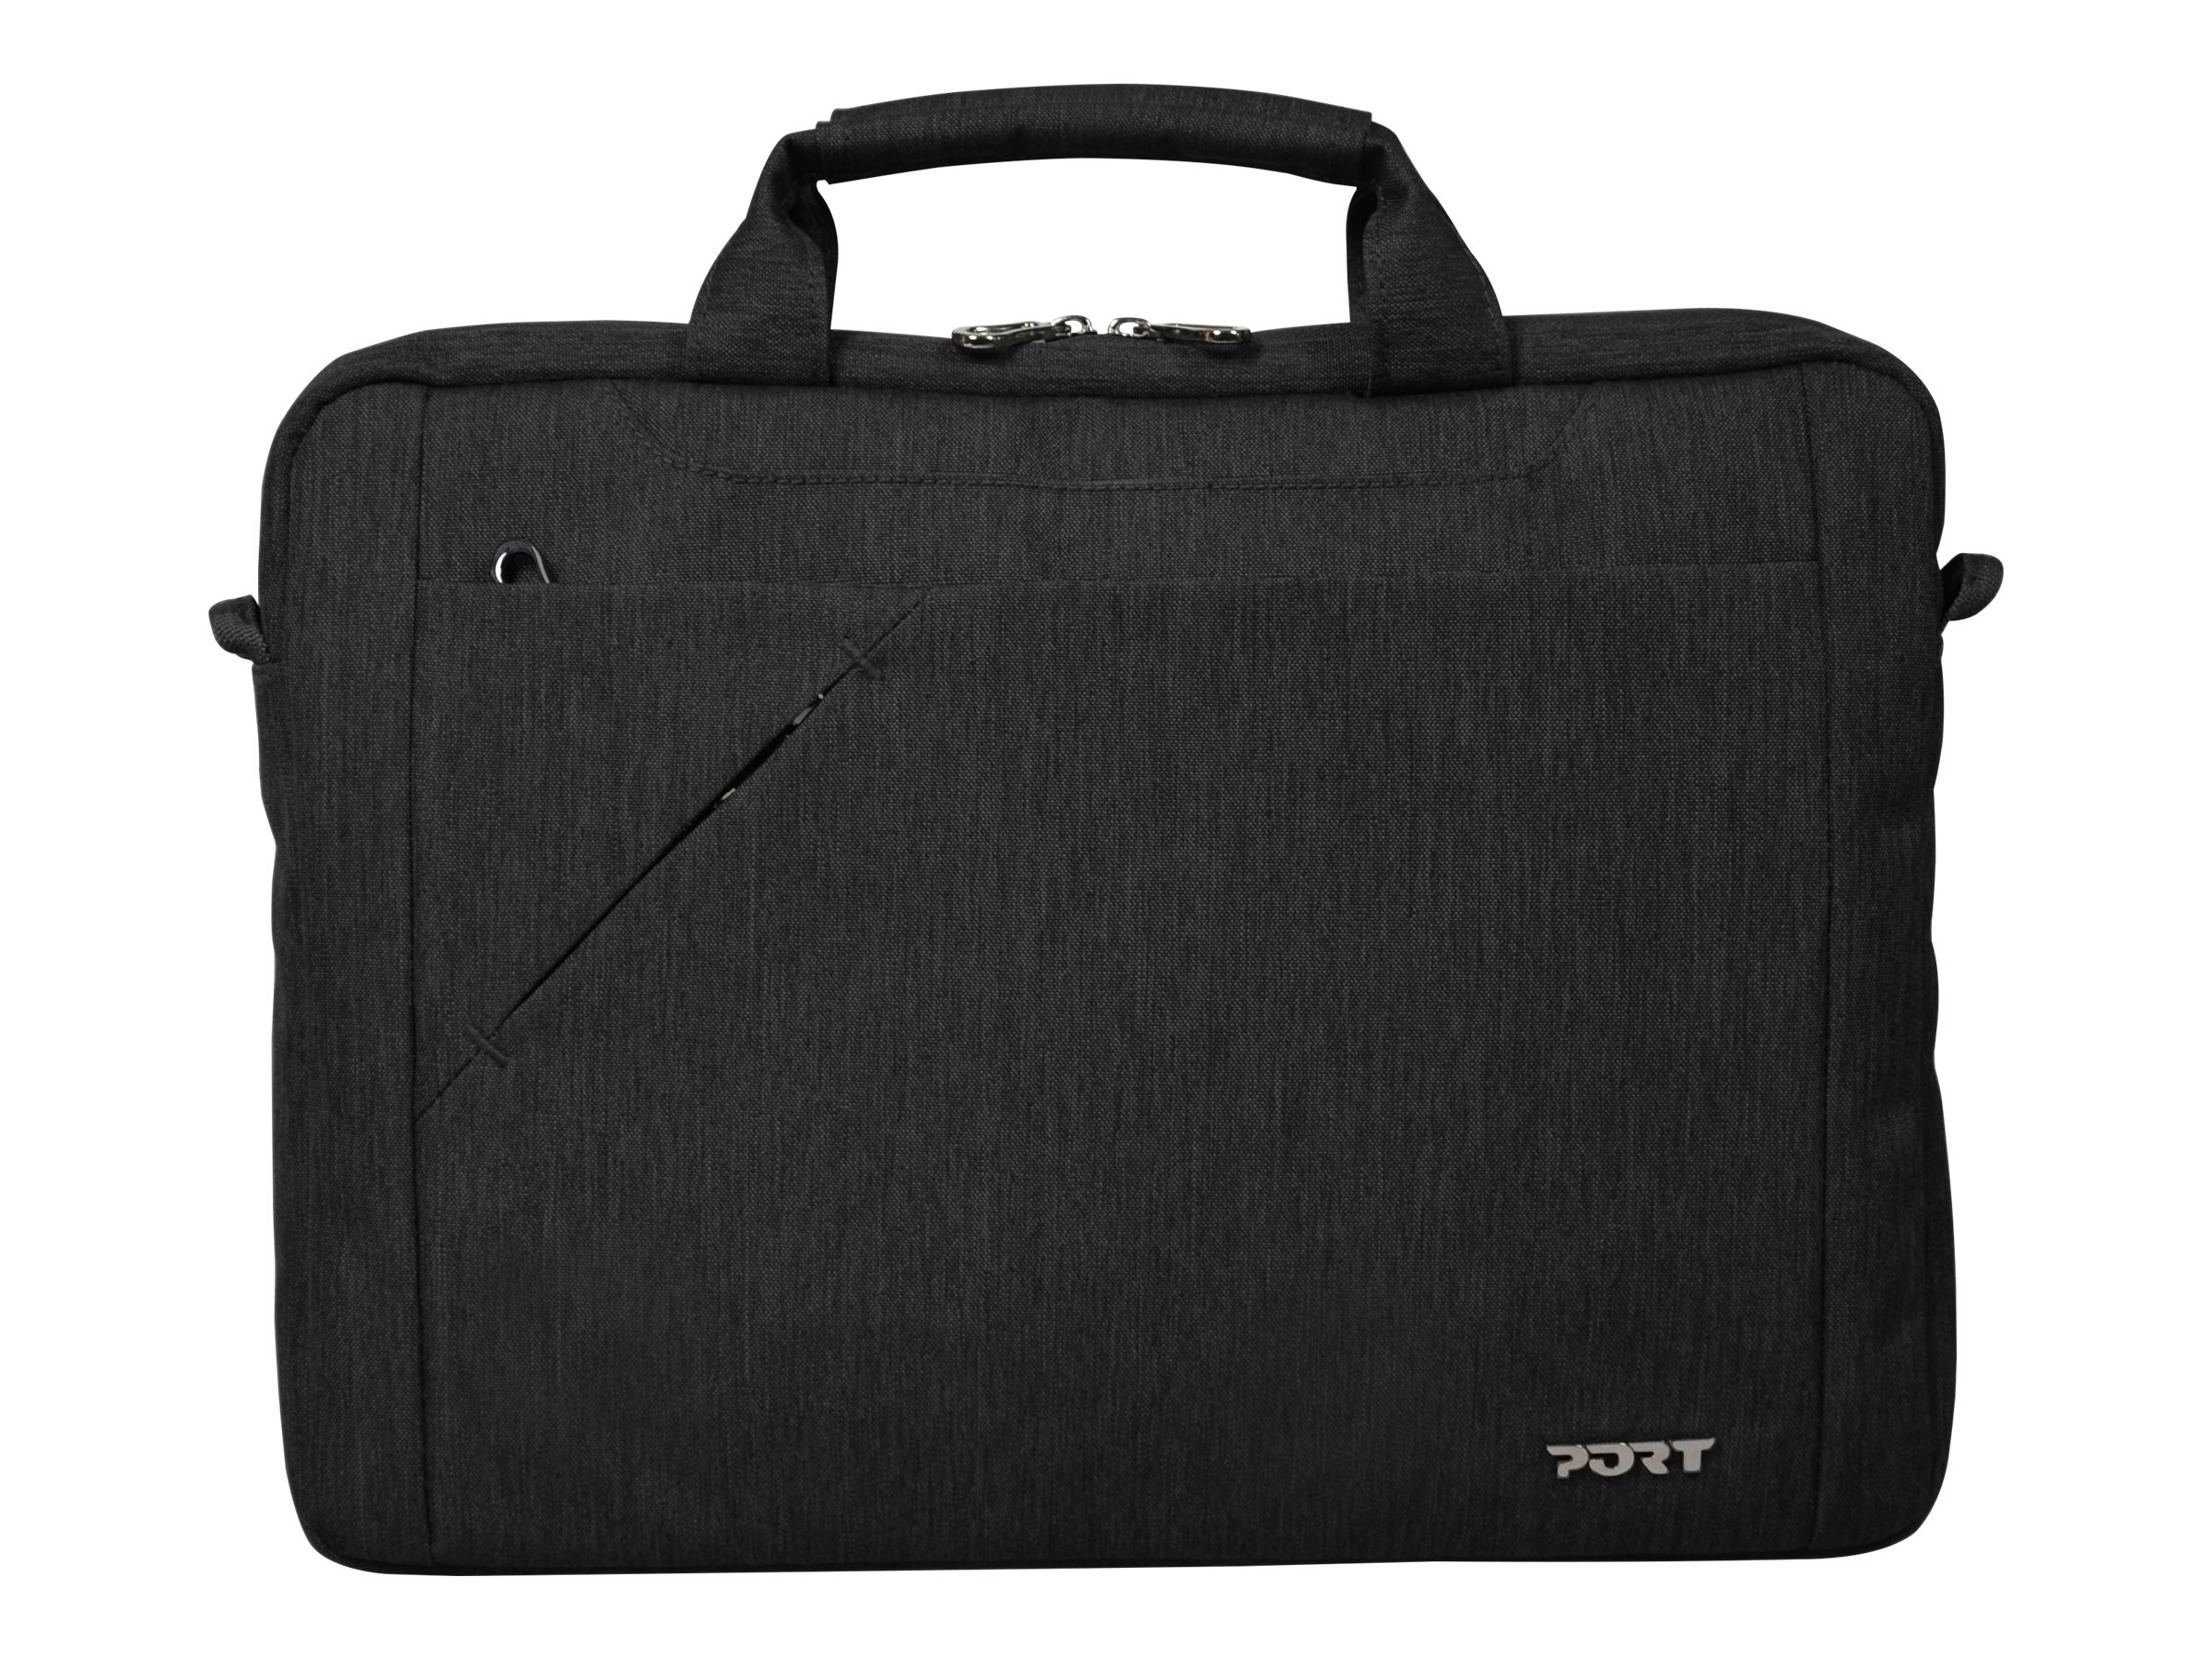 PORT SYDNEY TL - Sacoche pour ordinateur portable - 10" - 12" - noir - 135070 - Accessoires pour ordinateur portable et tablette